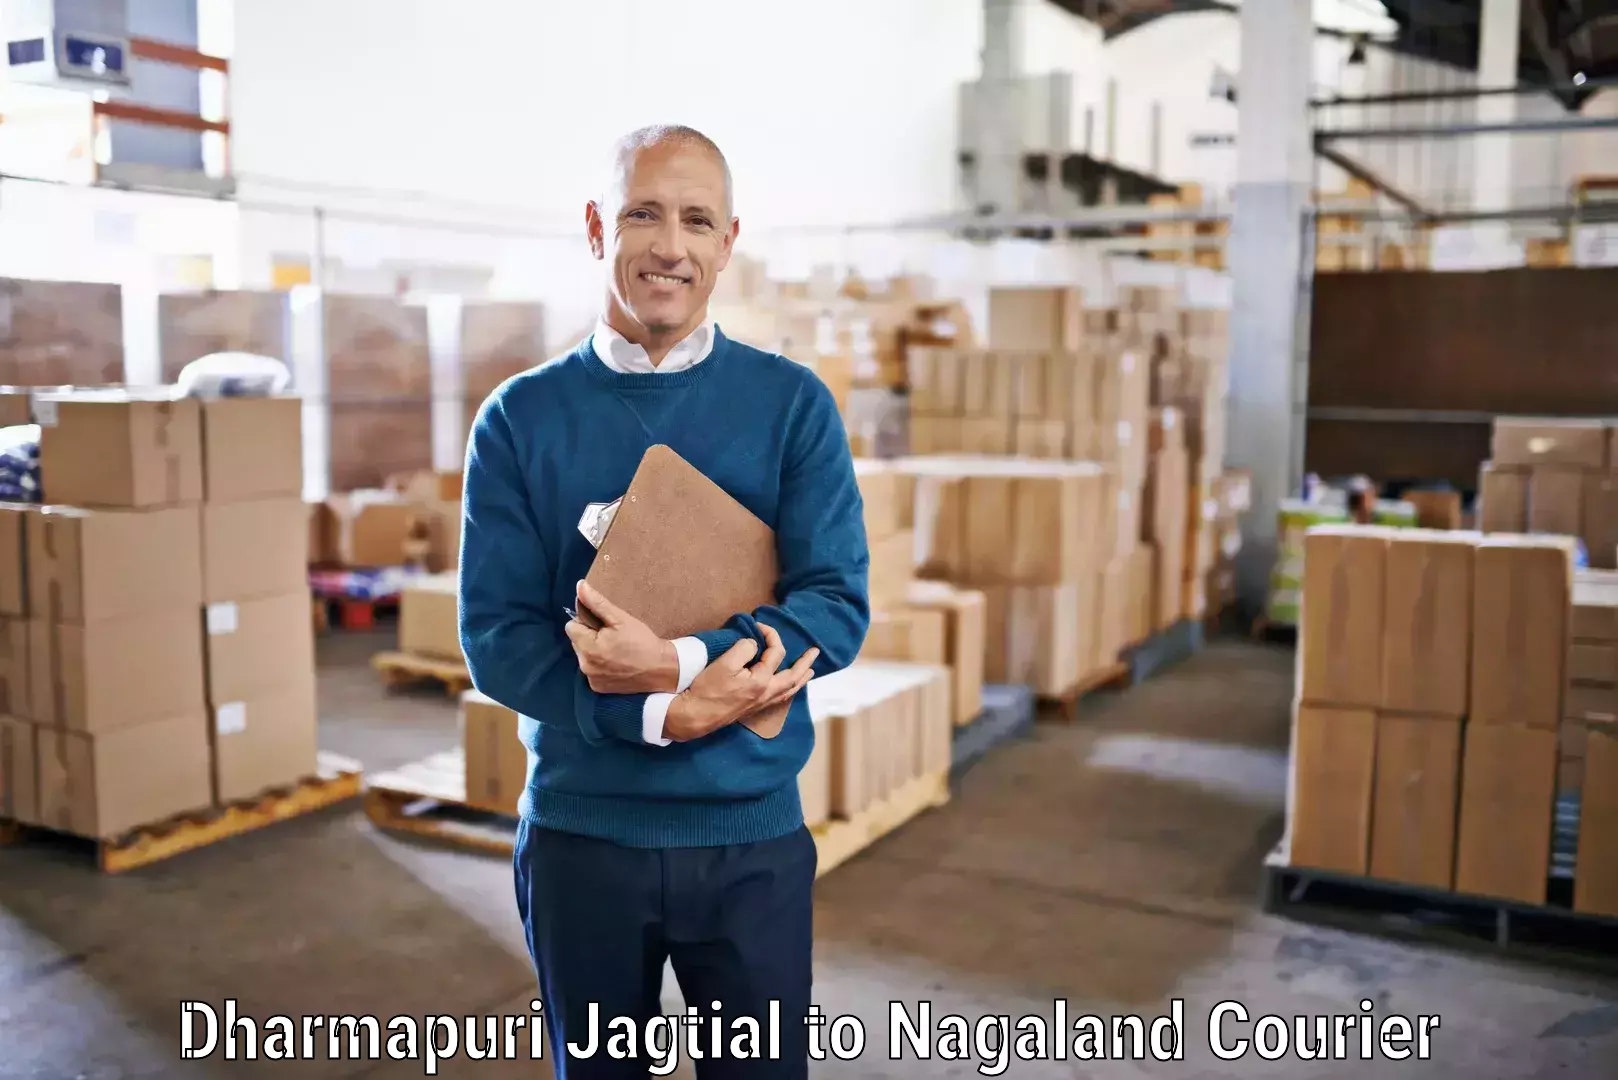 Versatile courier offerings Dharmapuri Jagtial to Kohima